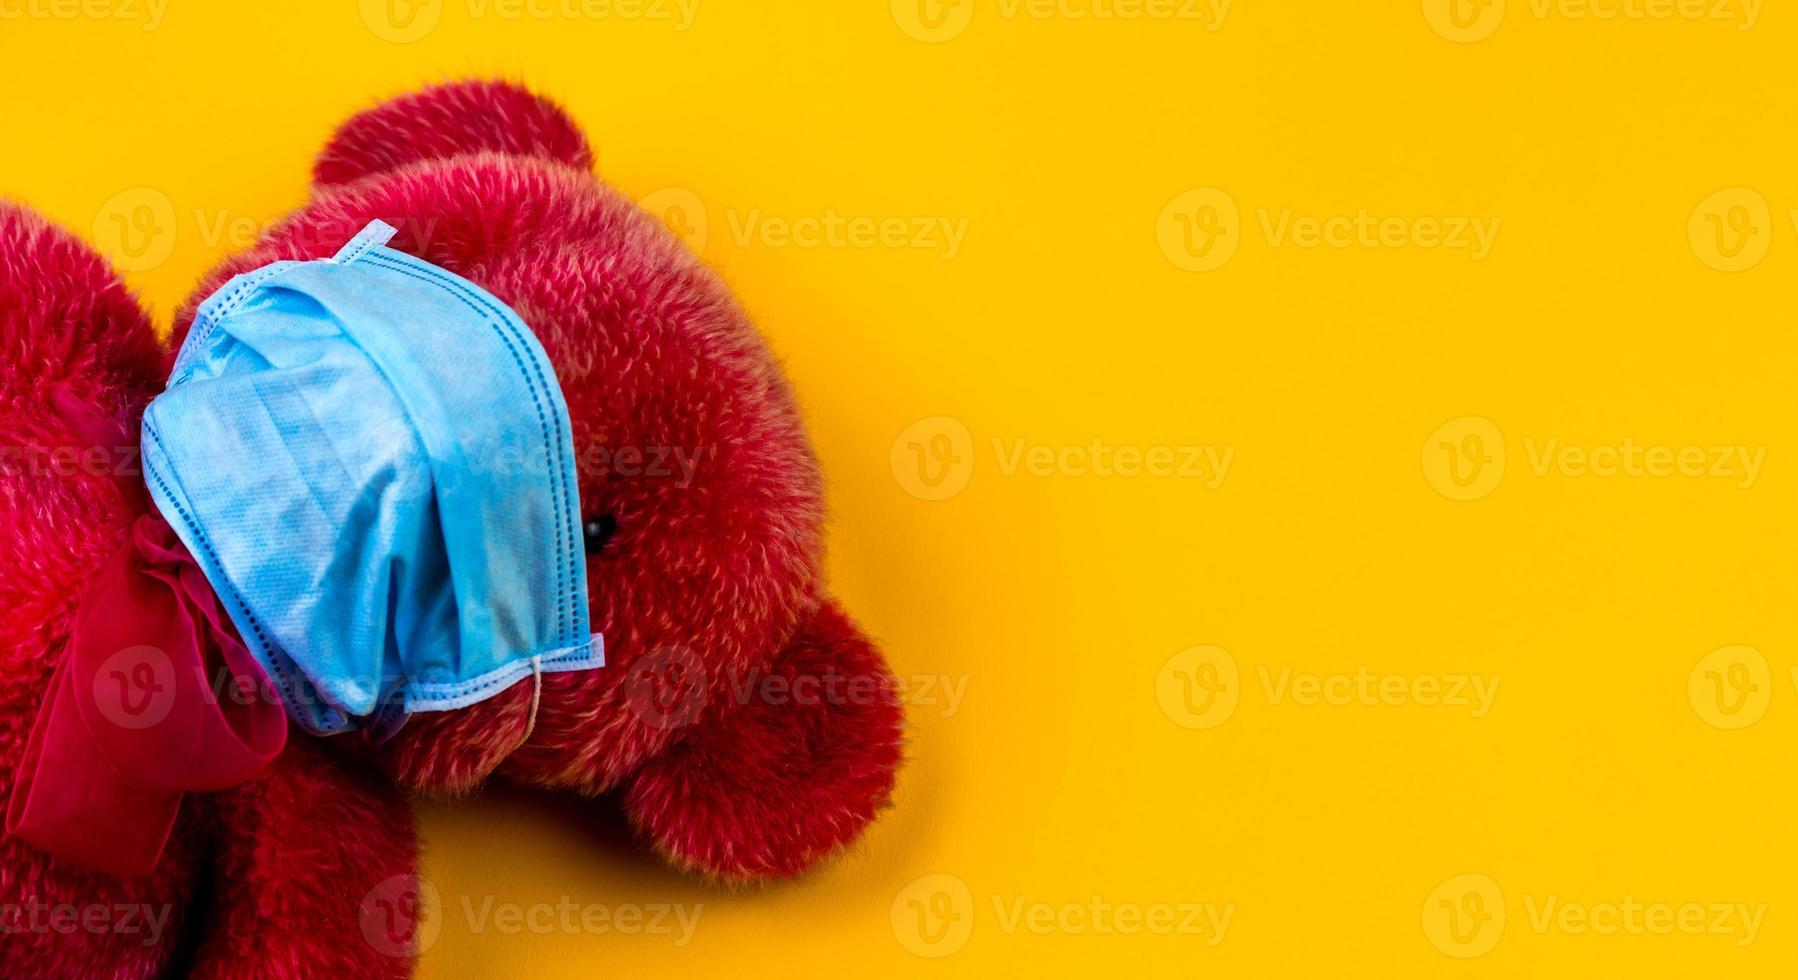 einsamer roter Teddybär in einer medizinischen Schutzmaske auf gelbem Grund foto